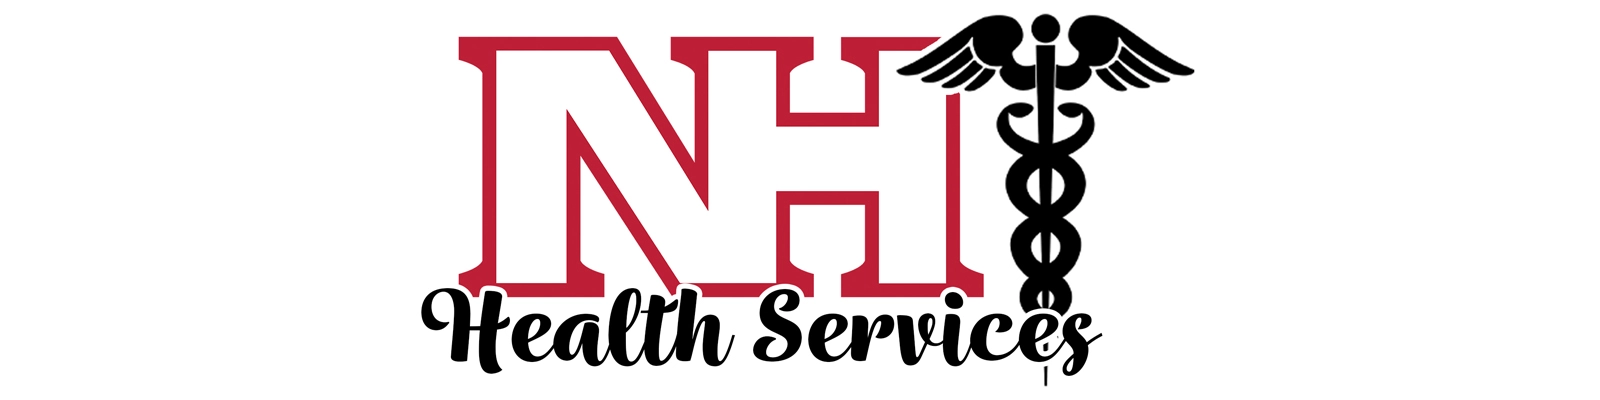 health-services-header3.jpg